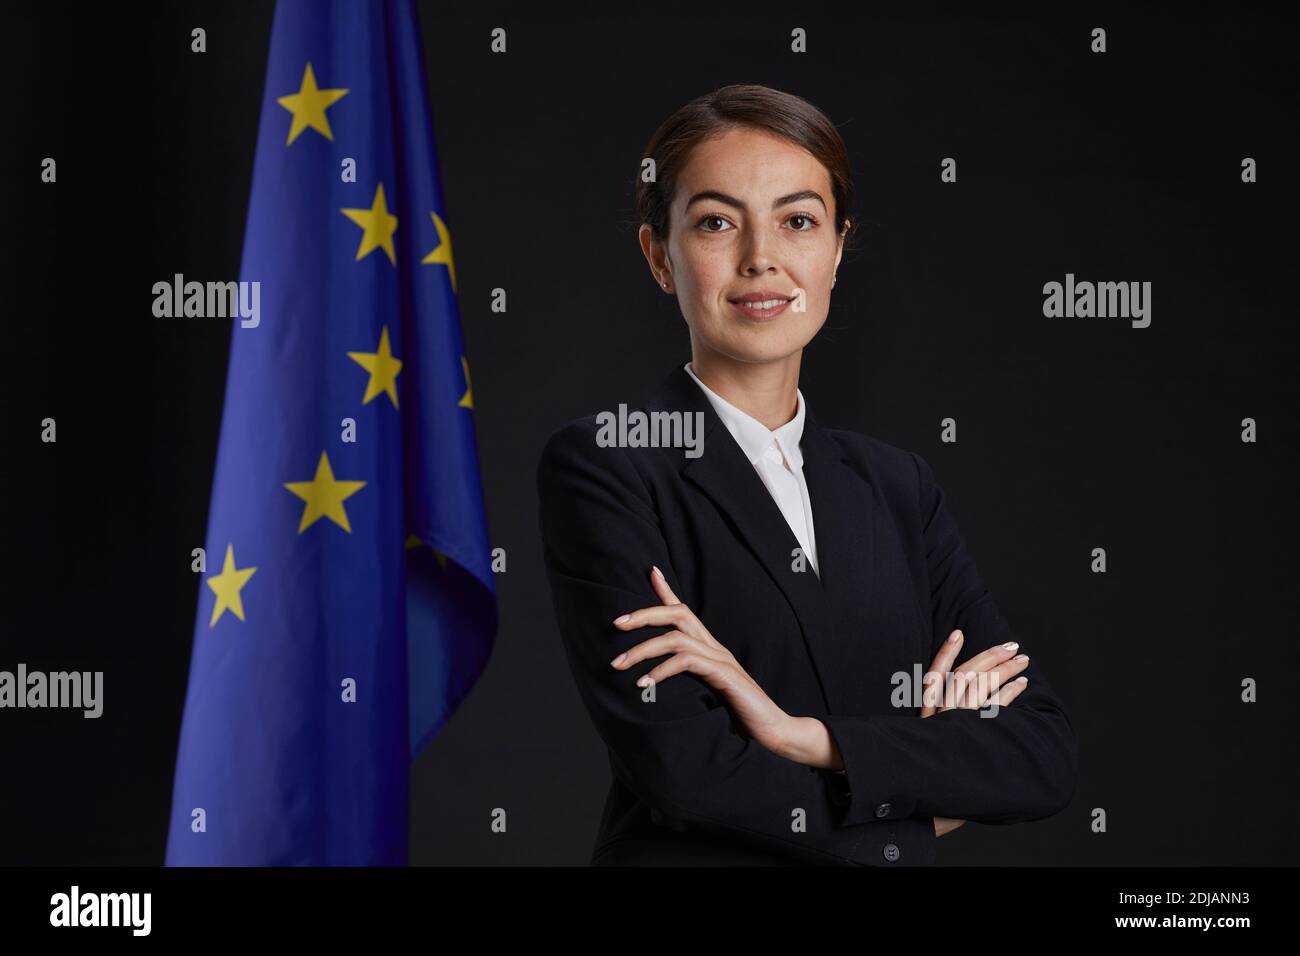 Retrato profesional de cintura arriba de una joven ejecutiva mirando la cámara y sonriendo mientras se pone de pie con los brazos cruzados contra la bandera de la UE en el fondo, Foto de stock